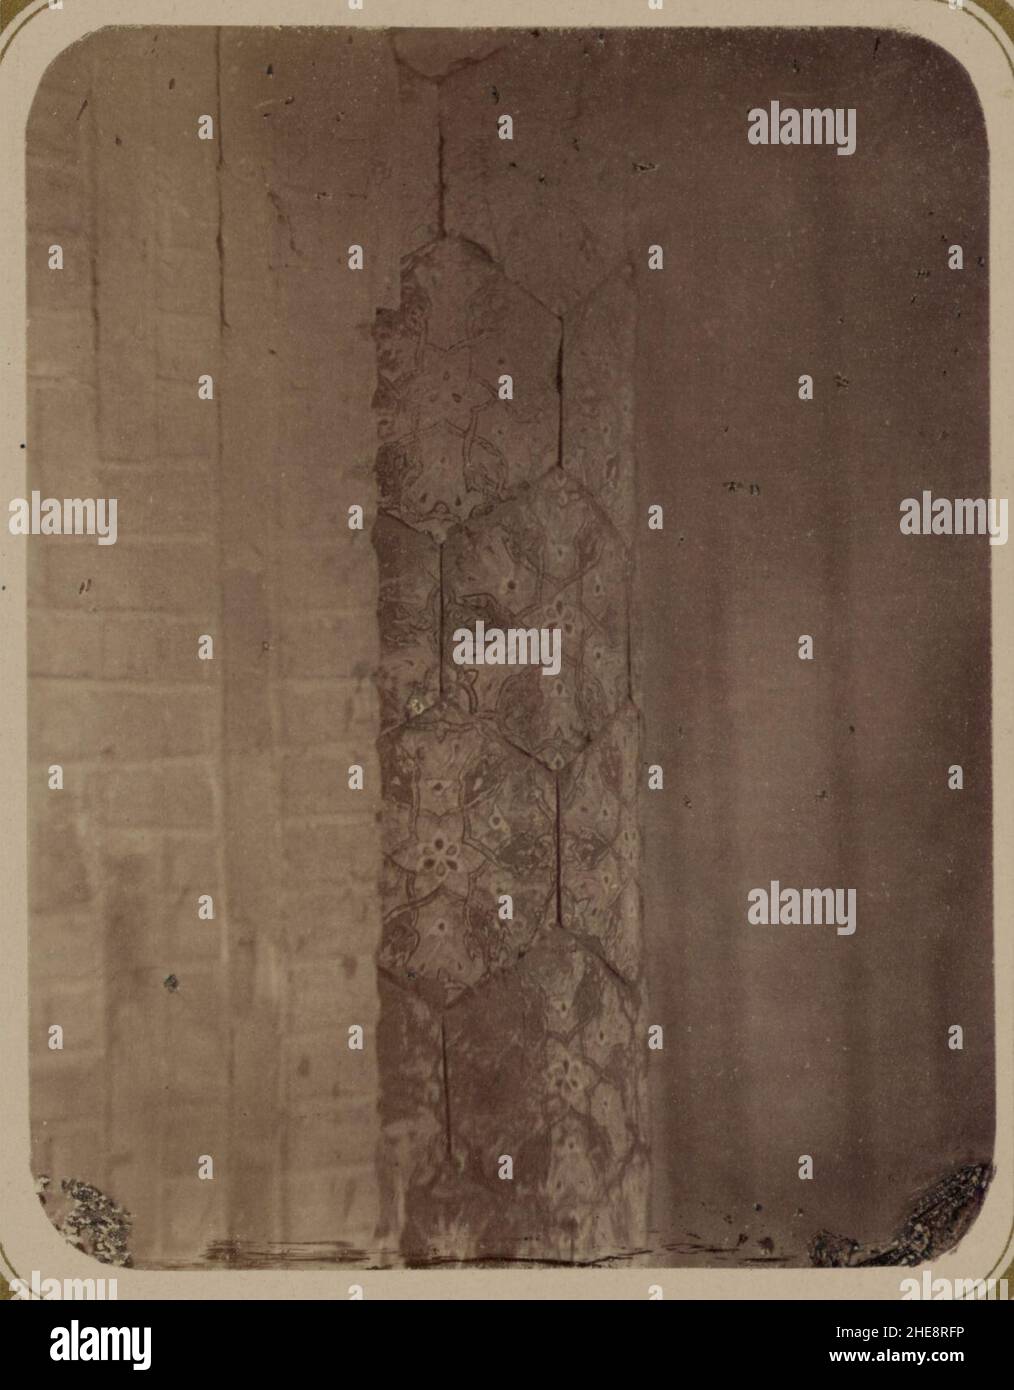 Samarkandskiia drevnosti. Medrese Bibi-Khanym. Chast' kolony (sic) v glavnoi arkie Stock Photo